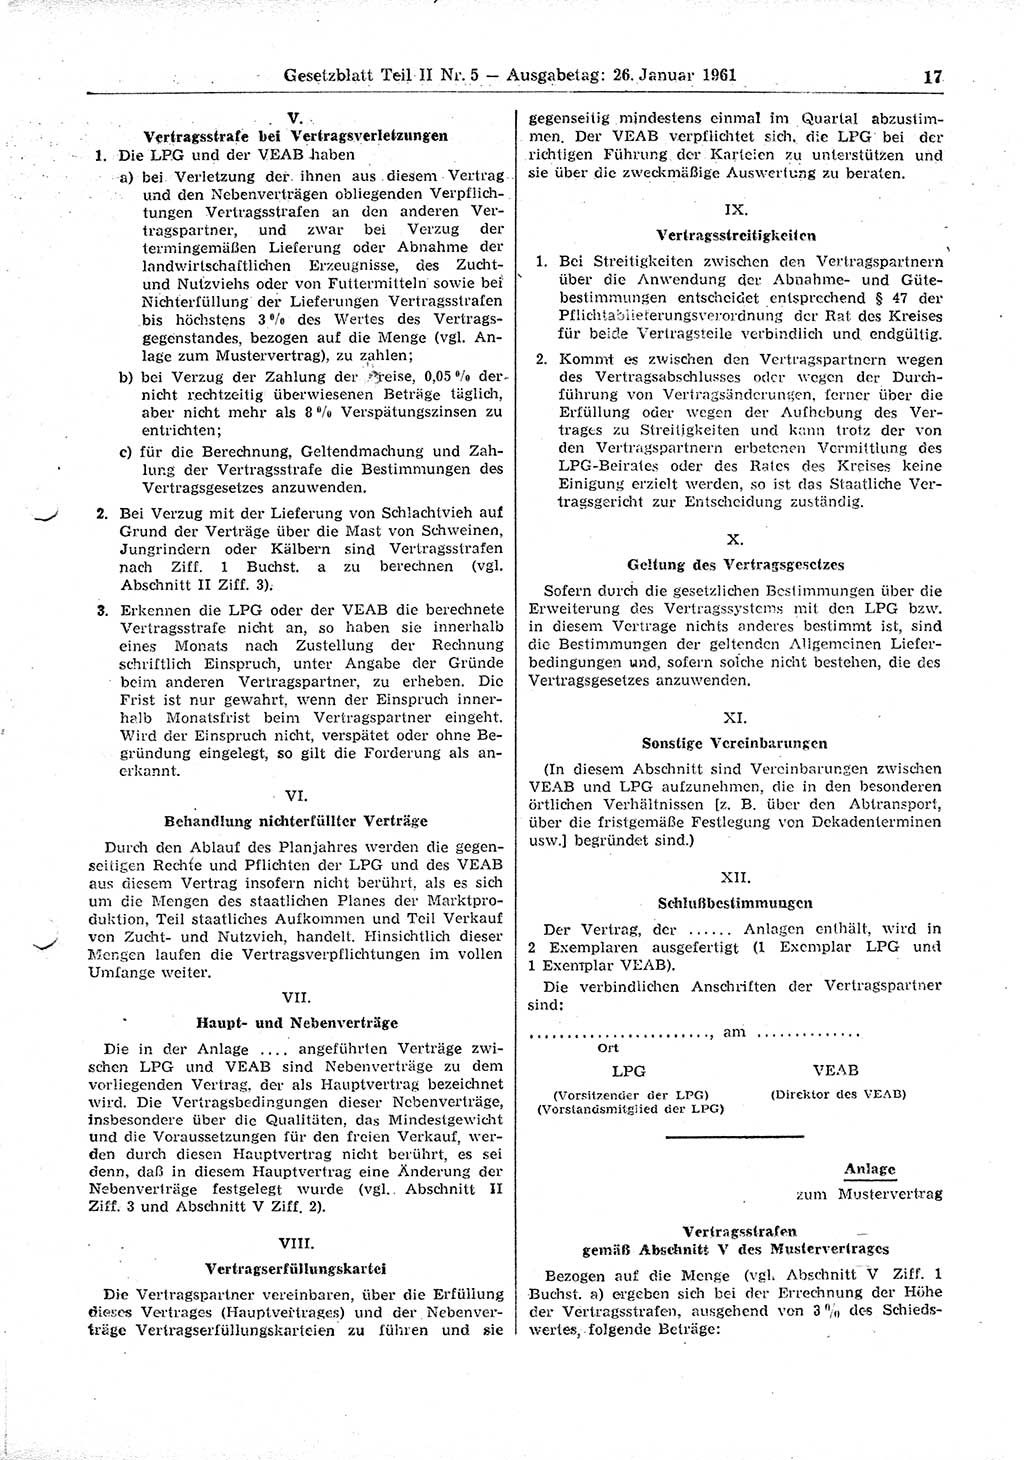 Gesetzblatt (GBl.) der Deutschen Demokratischen Republik (DDR) Teil ⅠⅠ 1961, Seite 17 (GBl. DDR ⅠⅠ 1961, S. 17)